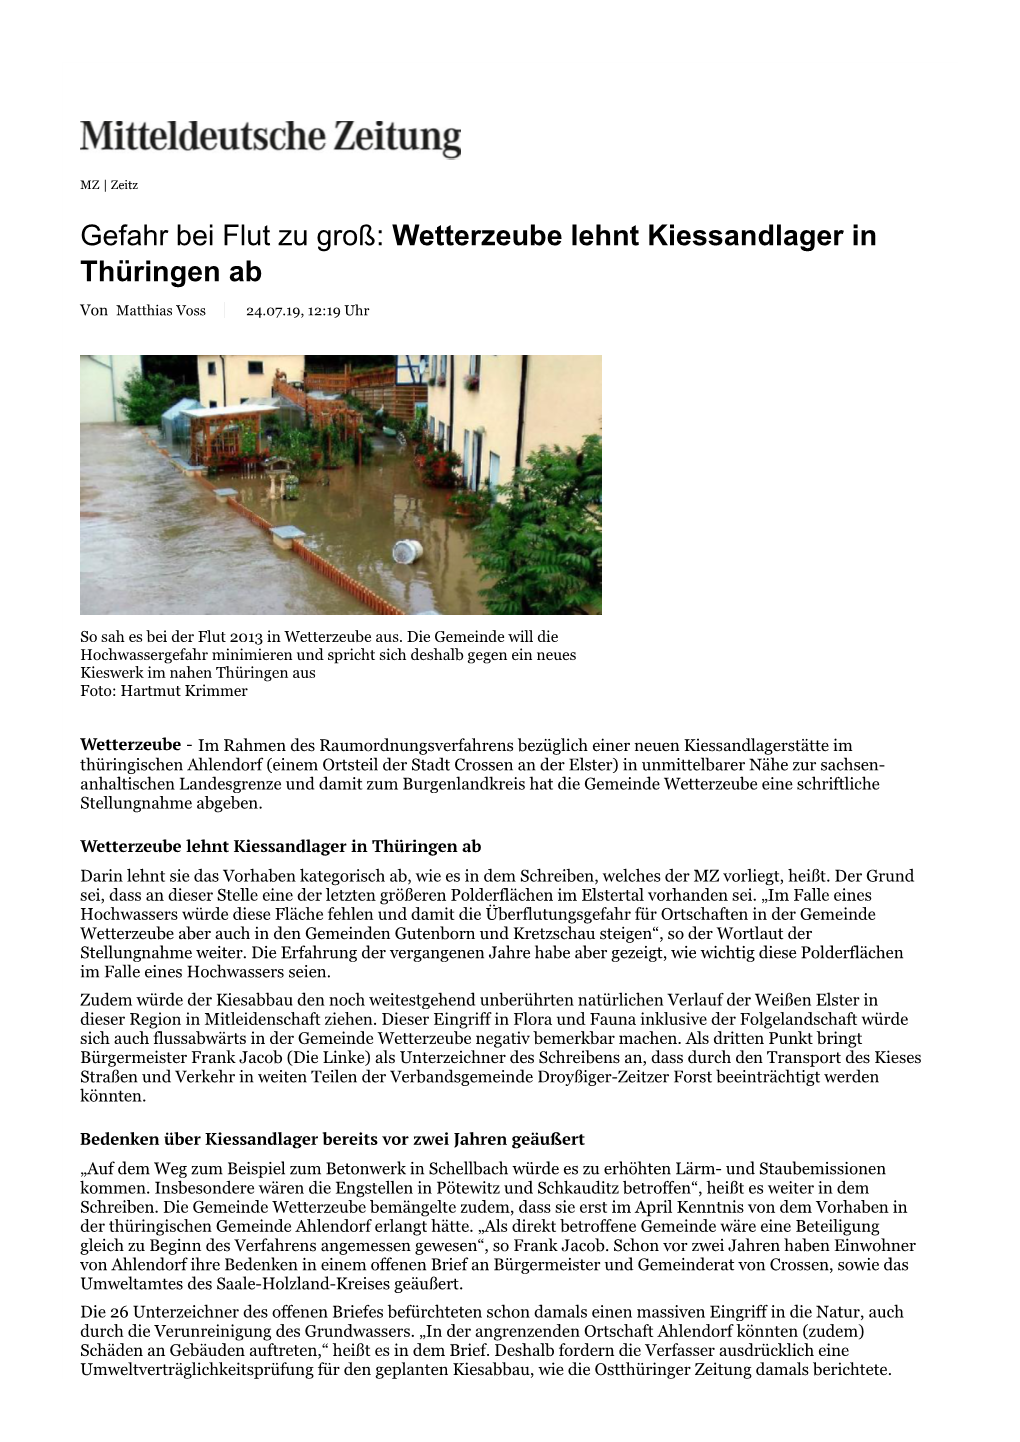 Gefahr Bei Flut Zu Groß: Wetterzeube Lehnt Kiessandlager in Thüringen Ab Von Matthias Voss 24.07.19, 12:19 Uhr